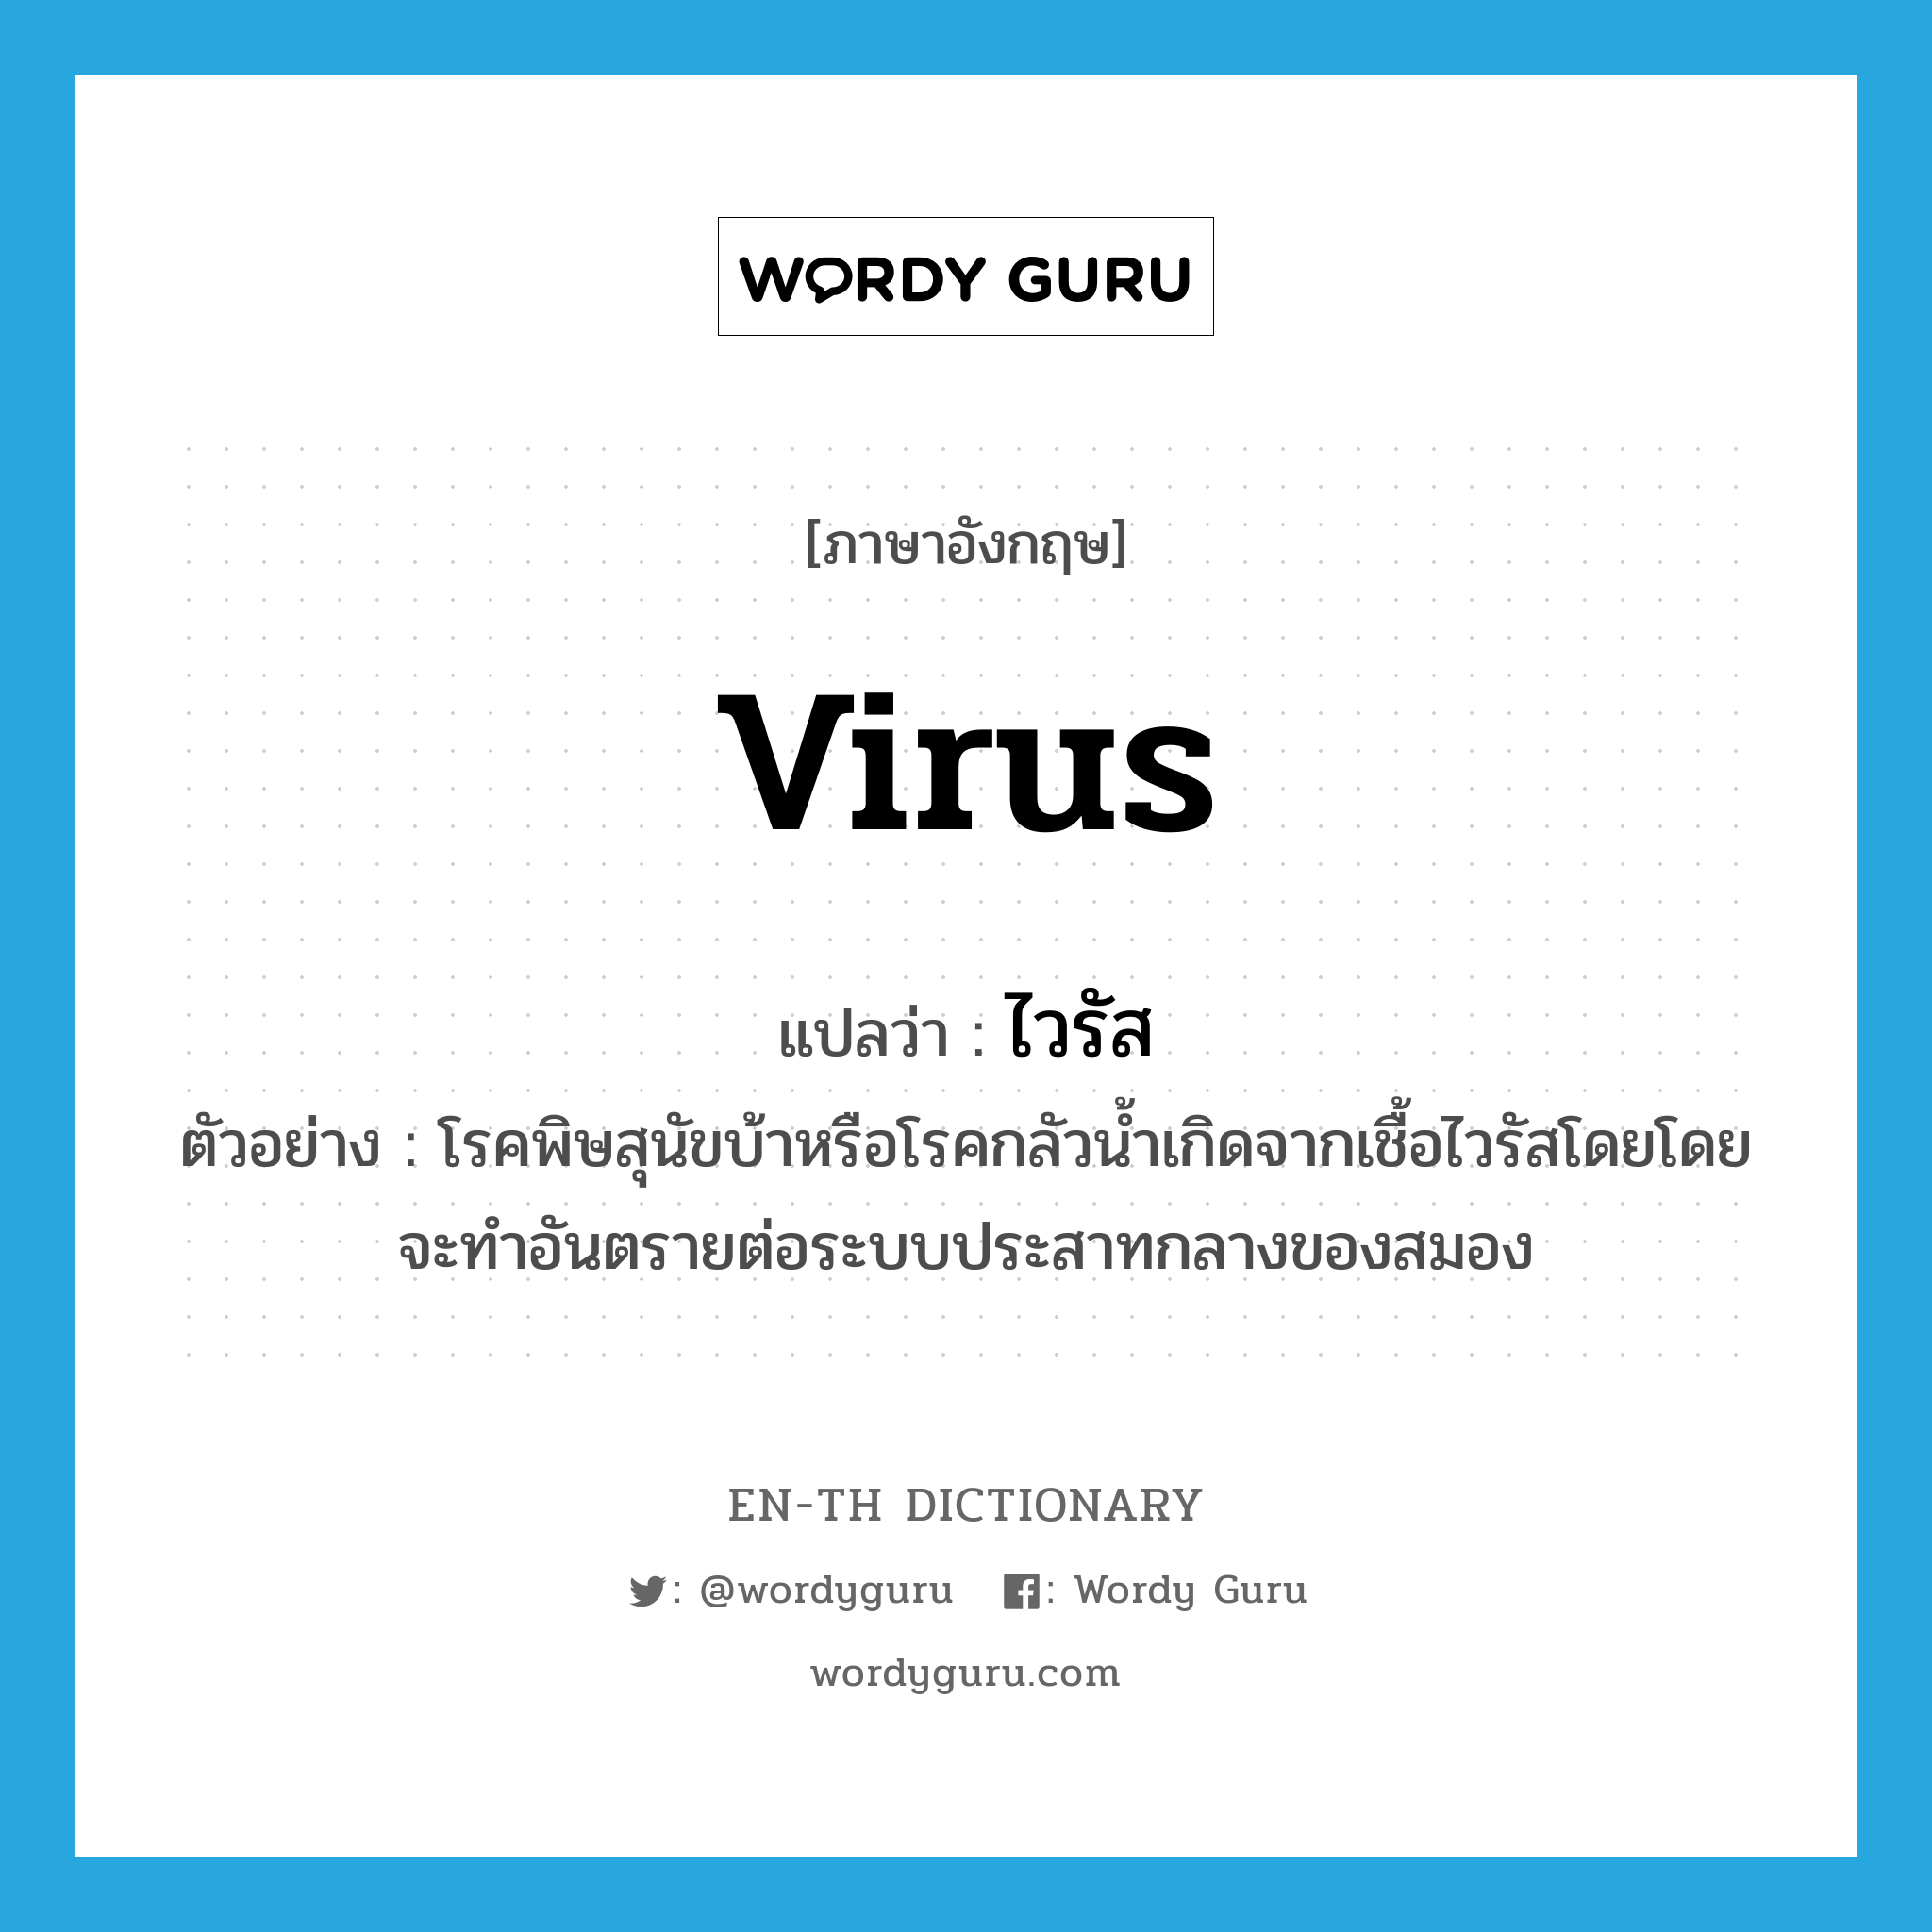 virus แปลว่า?, คำศัพท์ภาษาอังกฤษ virus แปลว่า ไวรัส ประเภท N ตัวอย่าง โรคพิษสุนัขบ้าหรือโรคกลัวน้ำเกิดจากเชื้อไวรัสโดยโดยจะทำอันตรายต่อระบบประสาทกลางของสมอง หมวด N